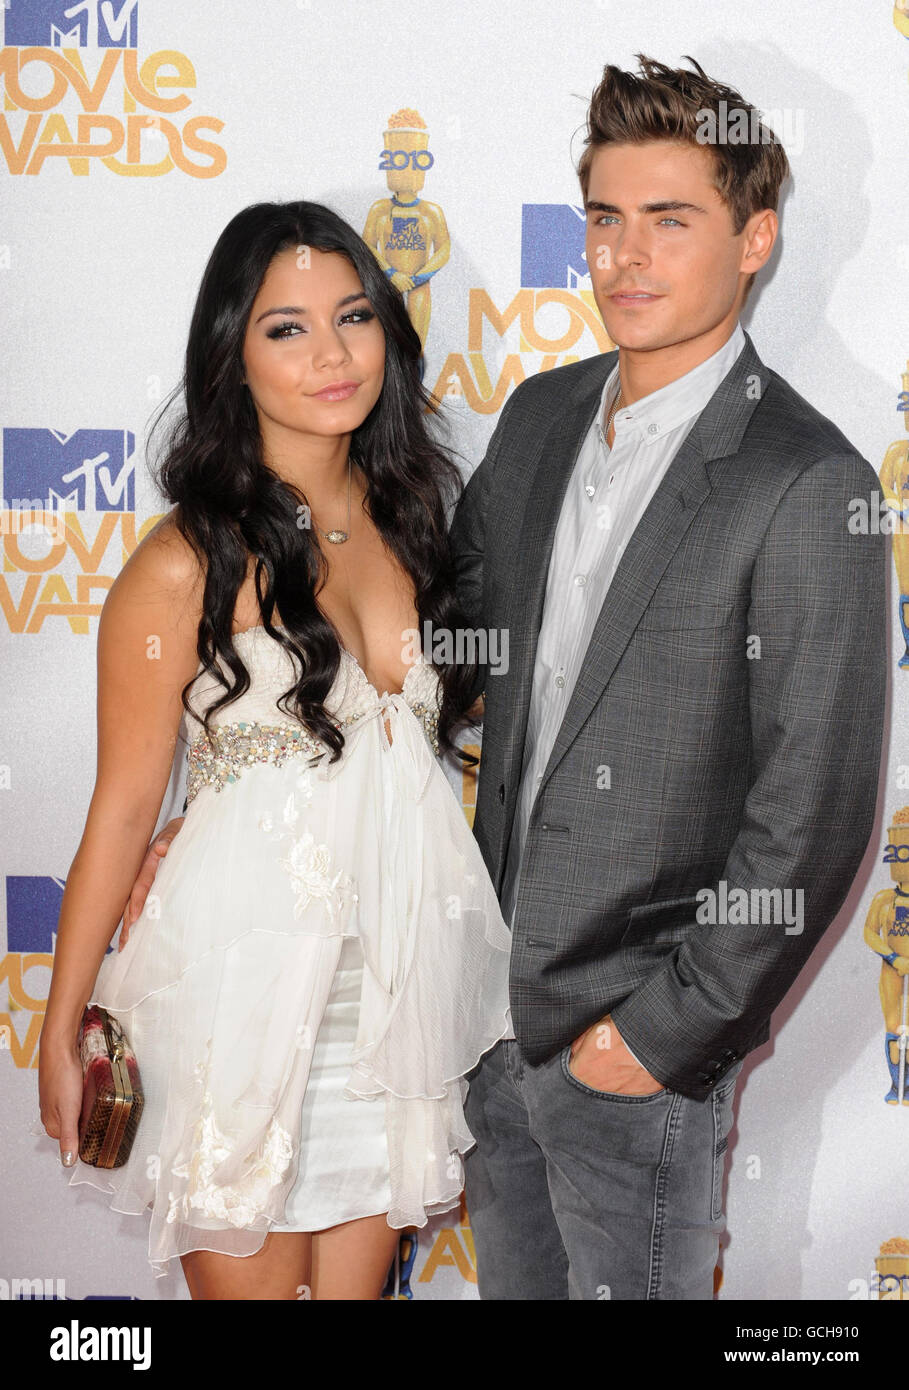 MTV Movie Awards 2010 - Ankunft - Kalifornien. Zac Efron und Vanessa Hudgens kommen für die MTV Movie Awards 2010 in den Universal Studios, Los Angeles. Stockfoto